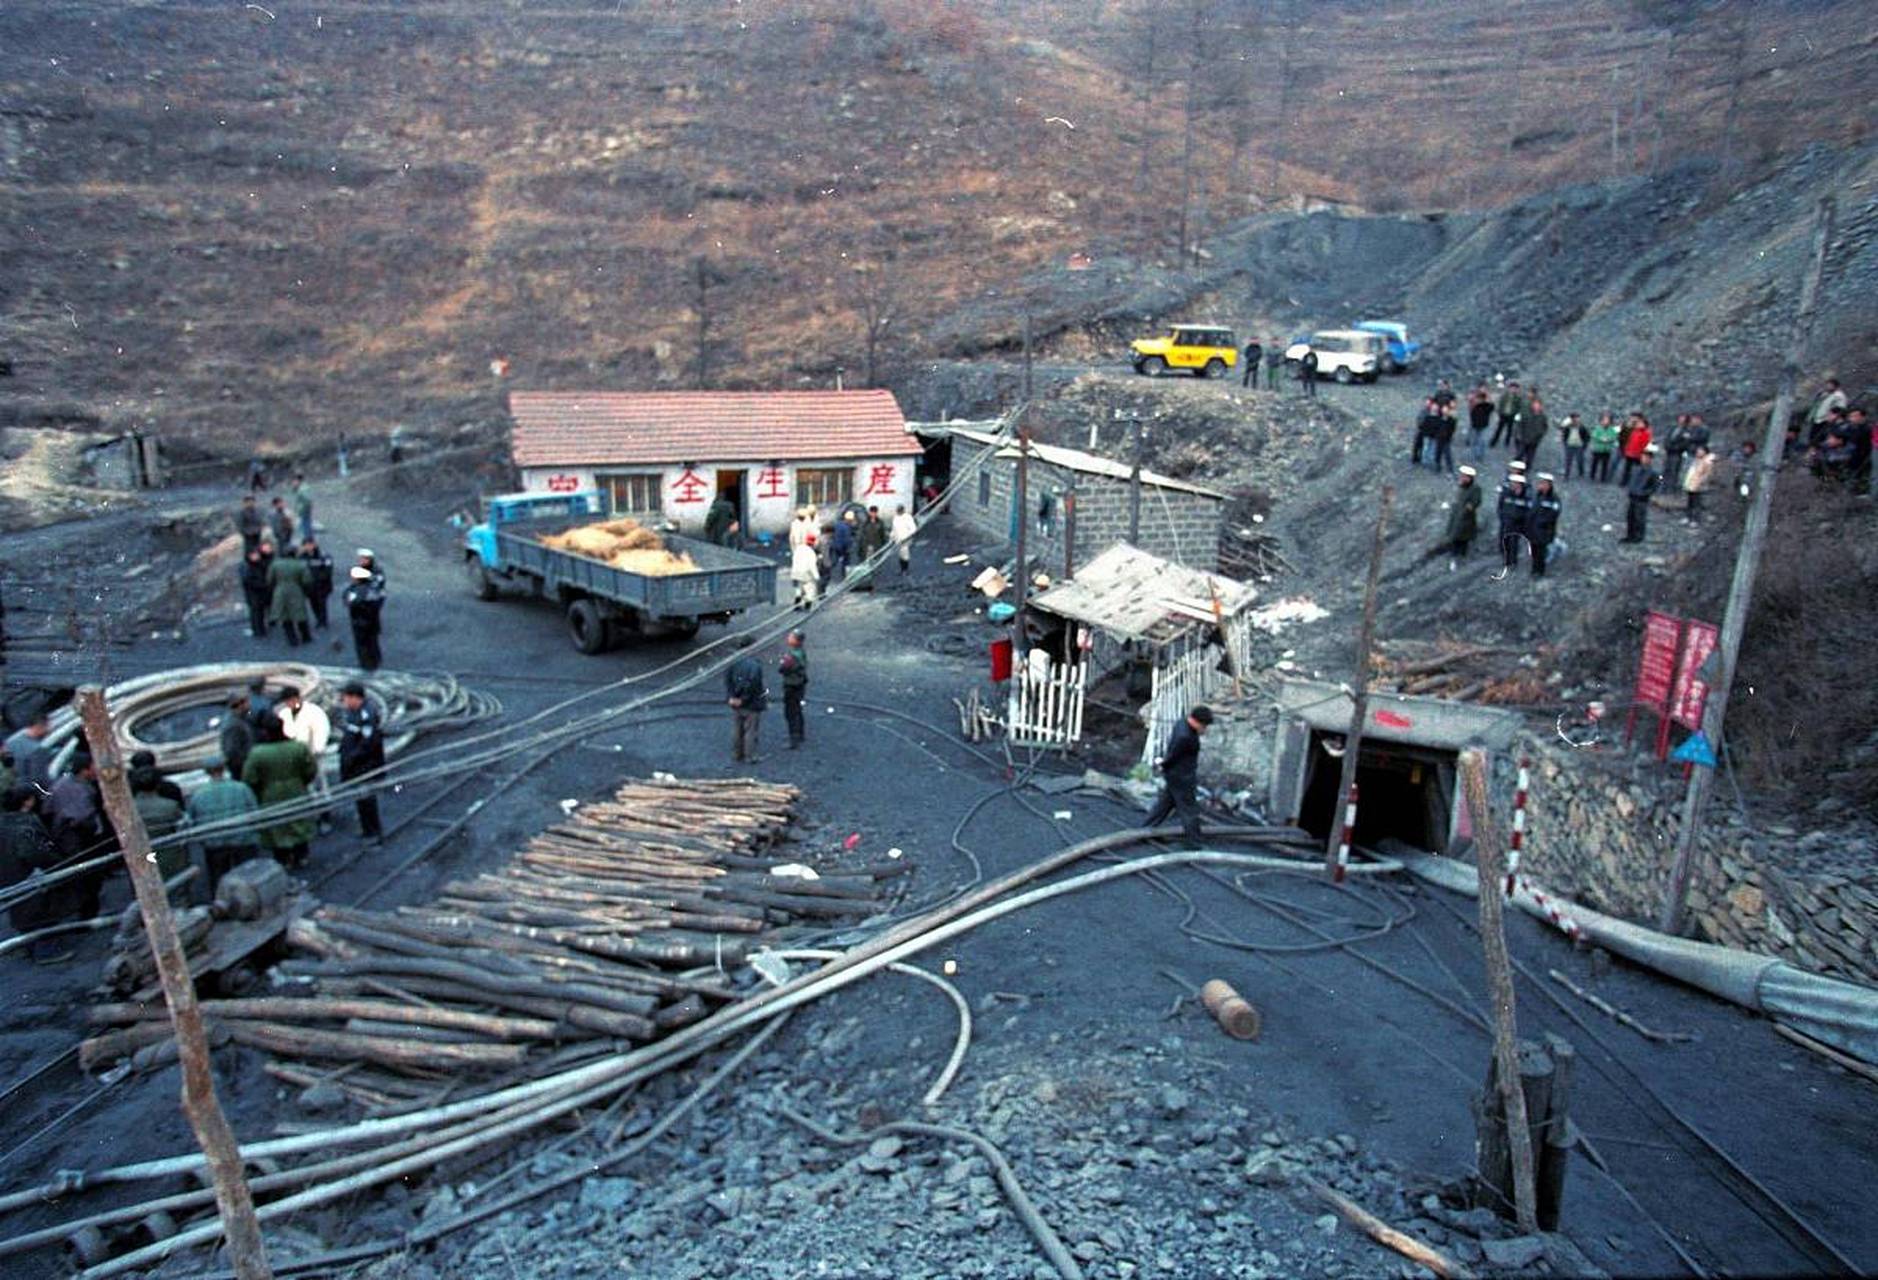 陕西青岗坪煤矿事故图片